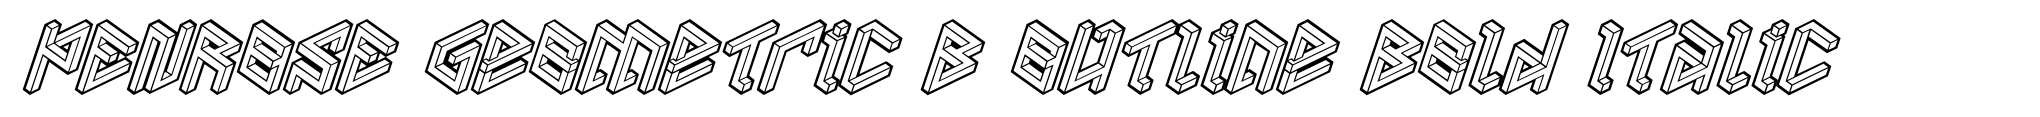 PENROSE Geometric B Outline Bold Italic image